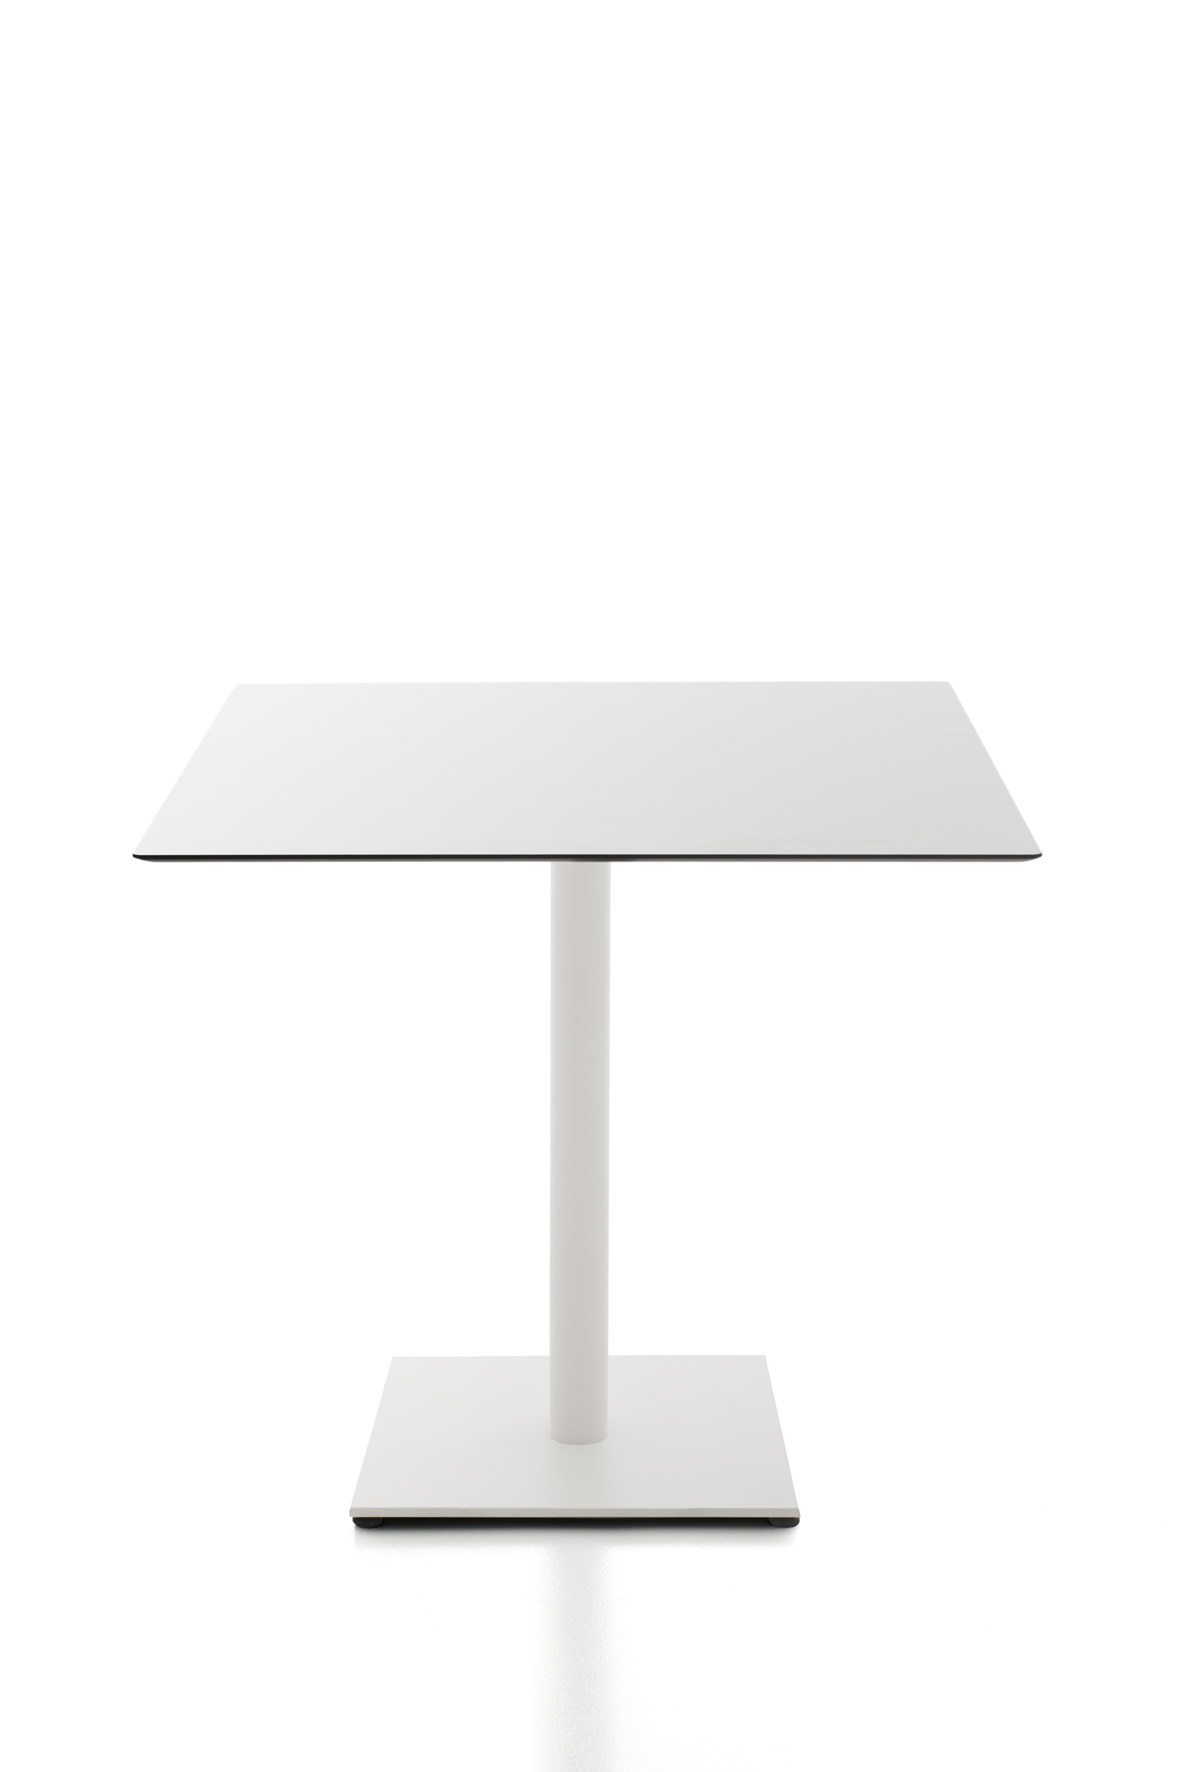 Tisch Kaleox, Basisversion; <br>quadratische Tischplatte 80 x 80 cm, wei; <br>Gestell wei lackiert; Tischhhe 74 cm